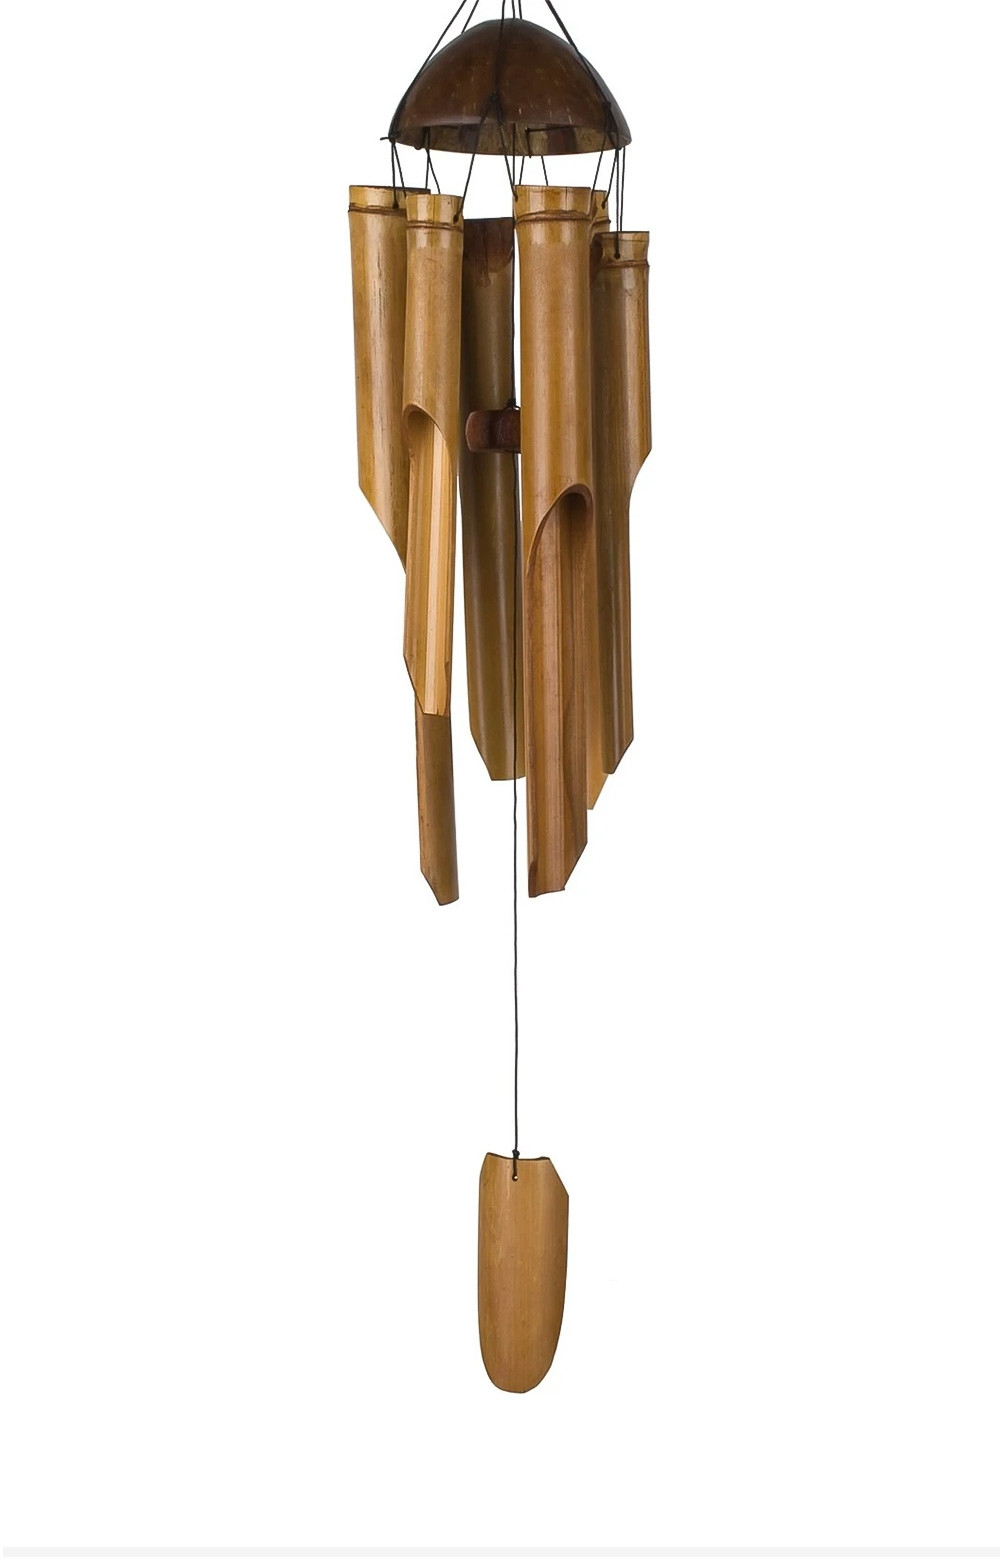 Carillon à vent - HALF COCO-BAMBOO